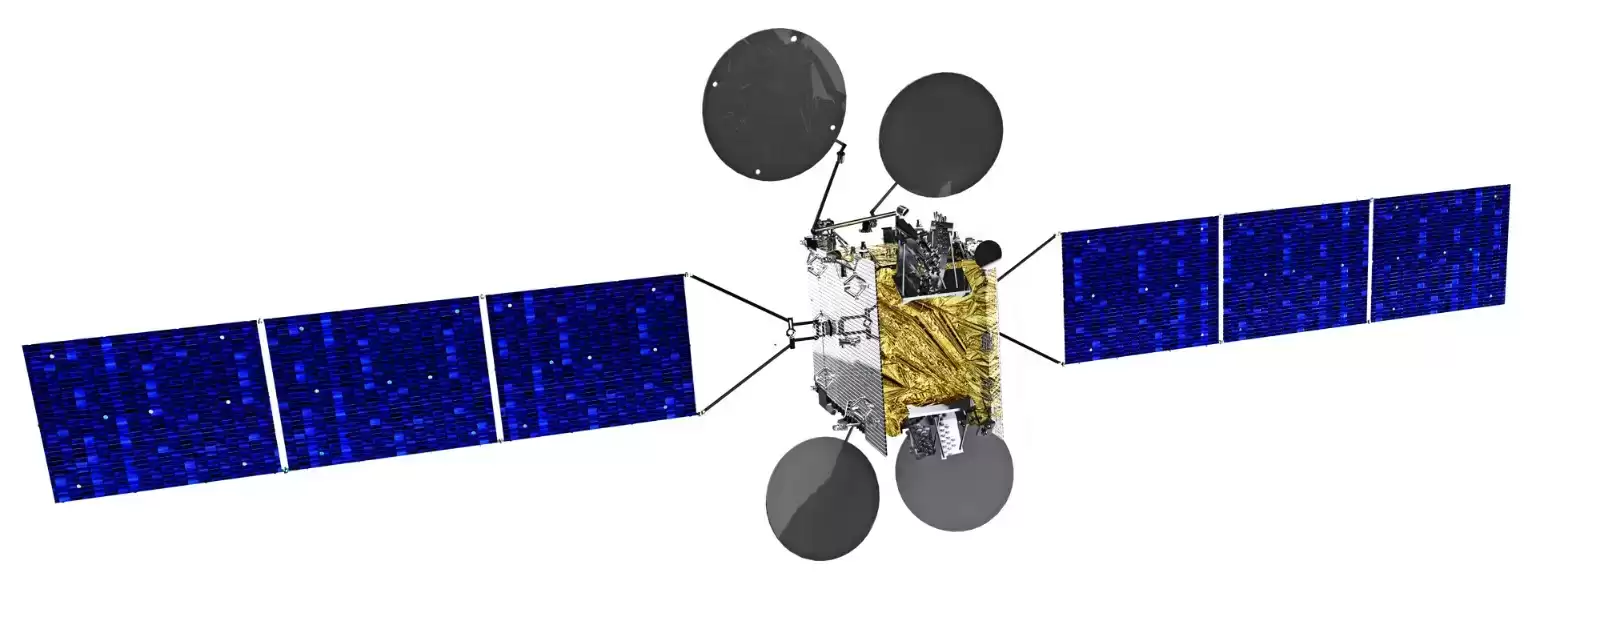 PT Telkom Indonesia melalui anak usahanya Telkomsat akan meluncurkan satelit dengan teknologi High Throughput Satellite (HTS) (Foto: Telkom Group)